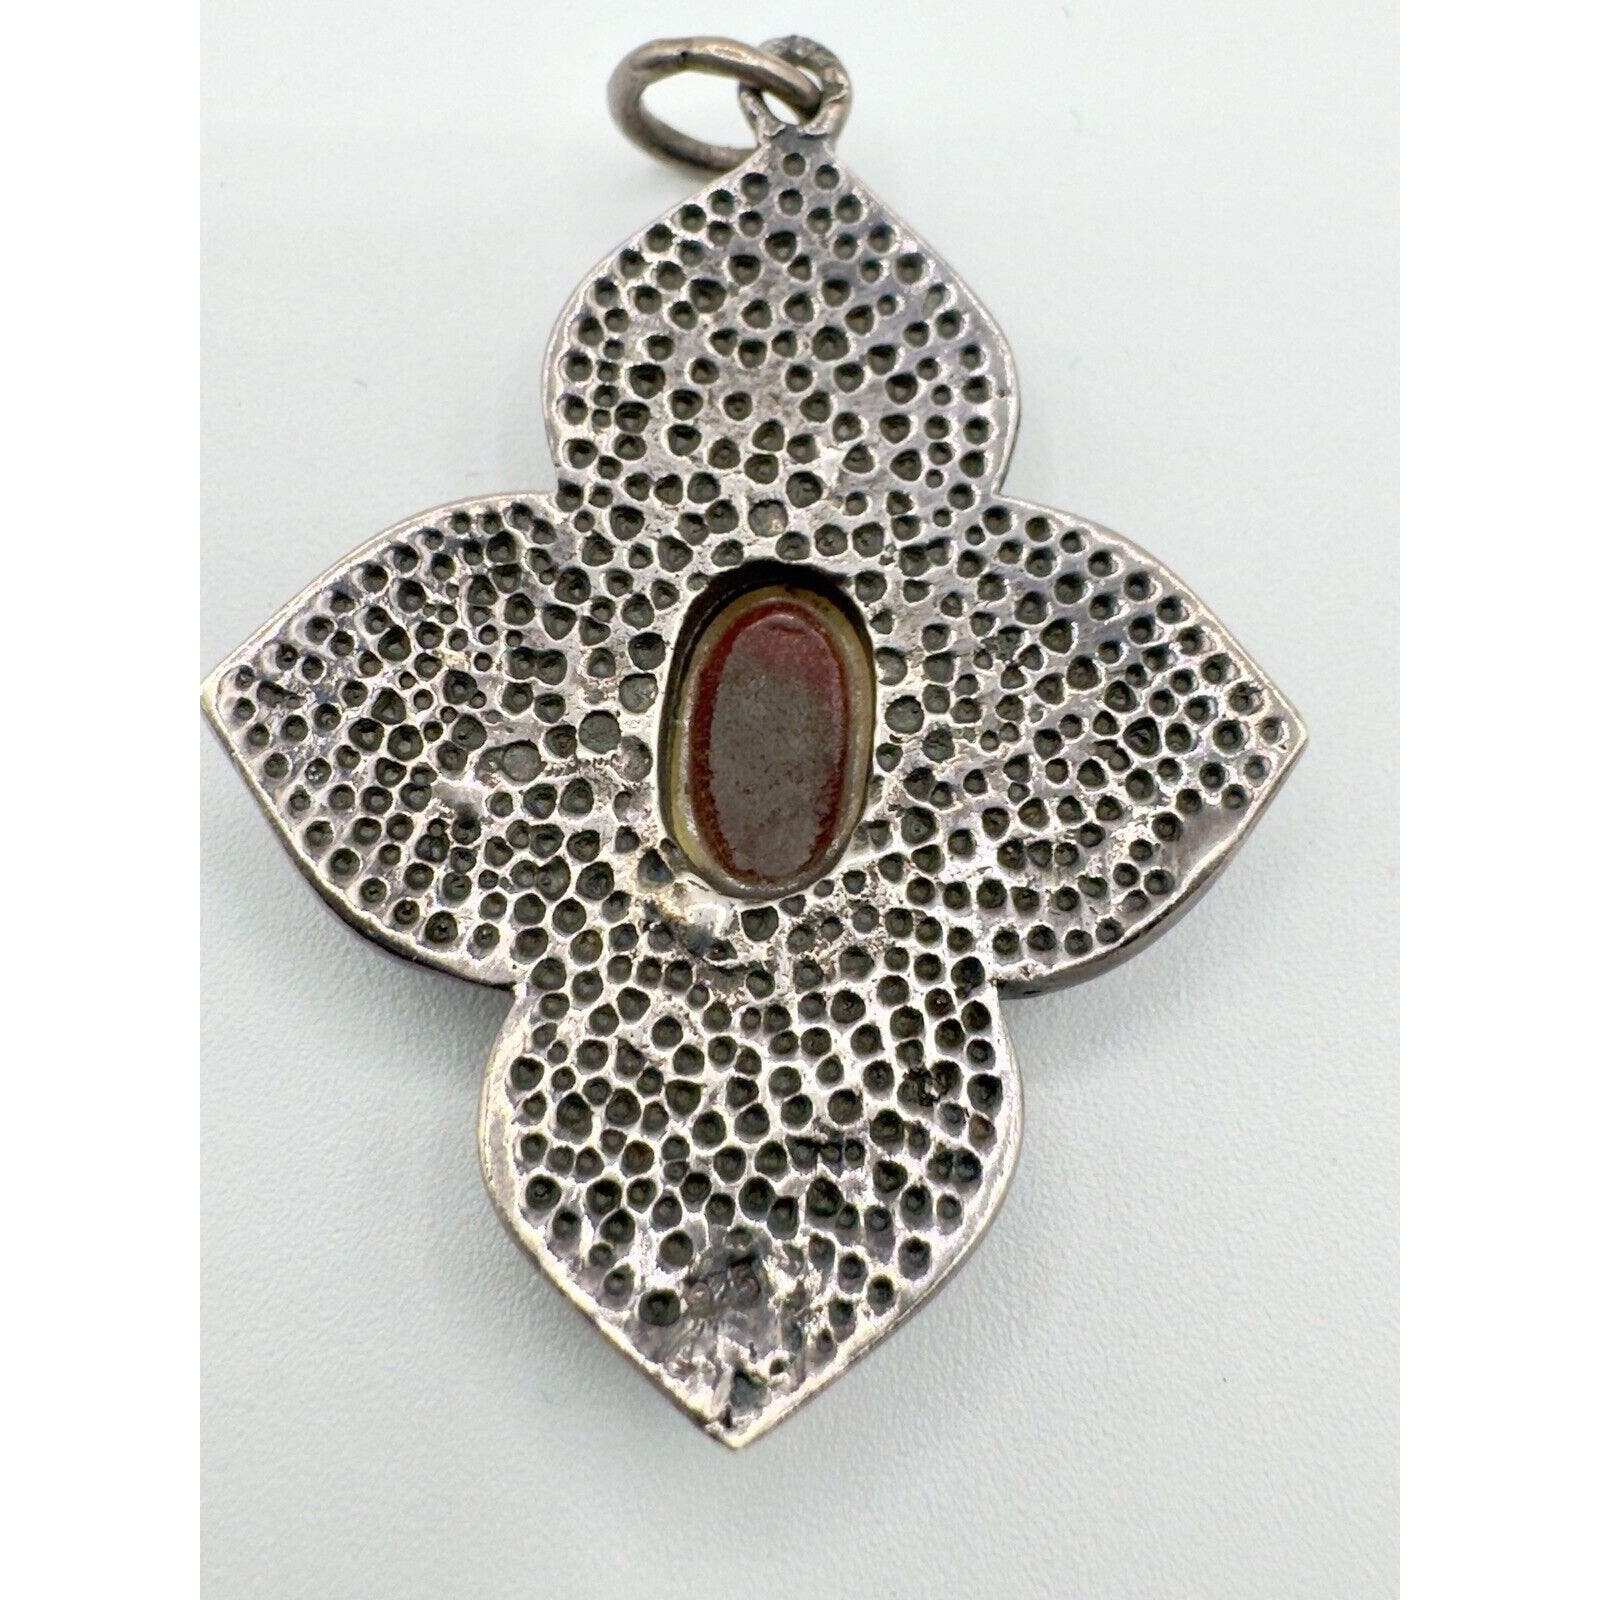 UnbrandedSterling Silver Carnelian Flower Pendant Unmarked Tested 2”x1.5” Boho Style - Black Dog Vintage